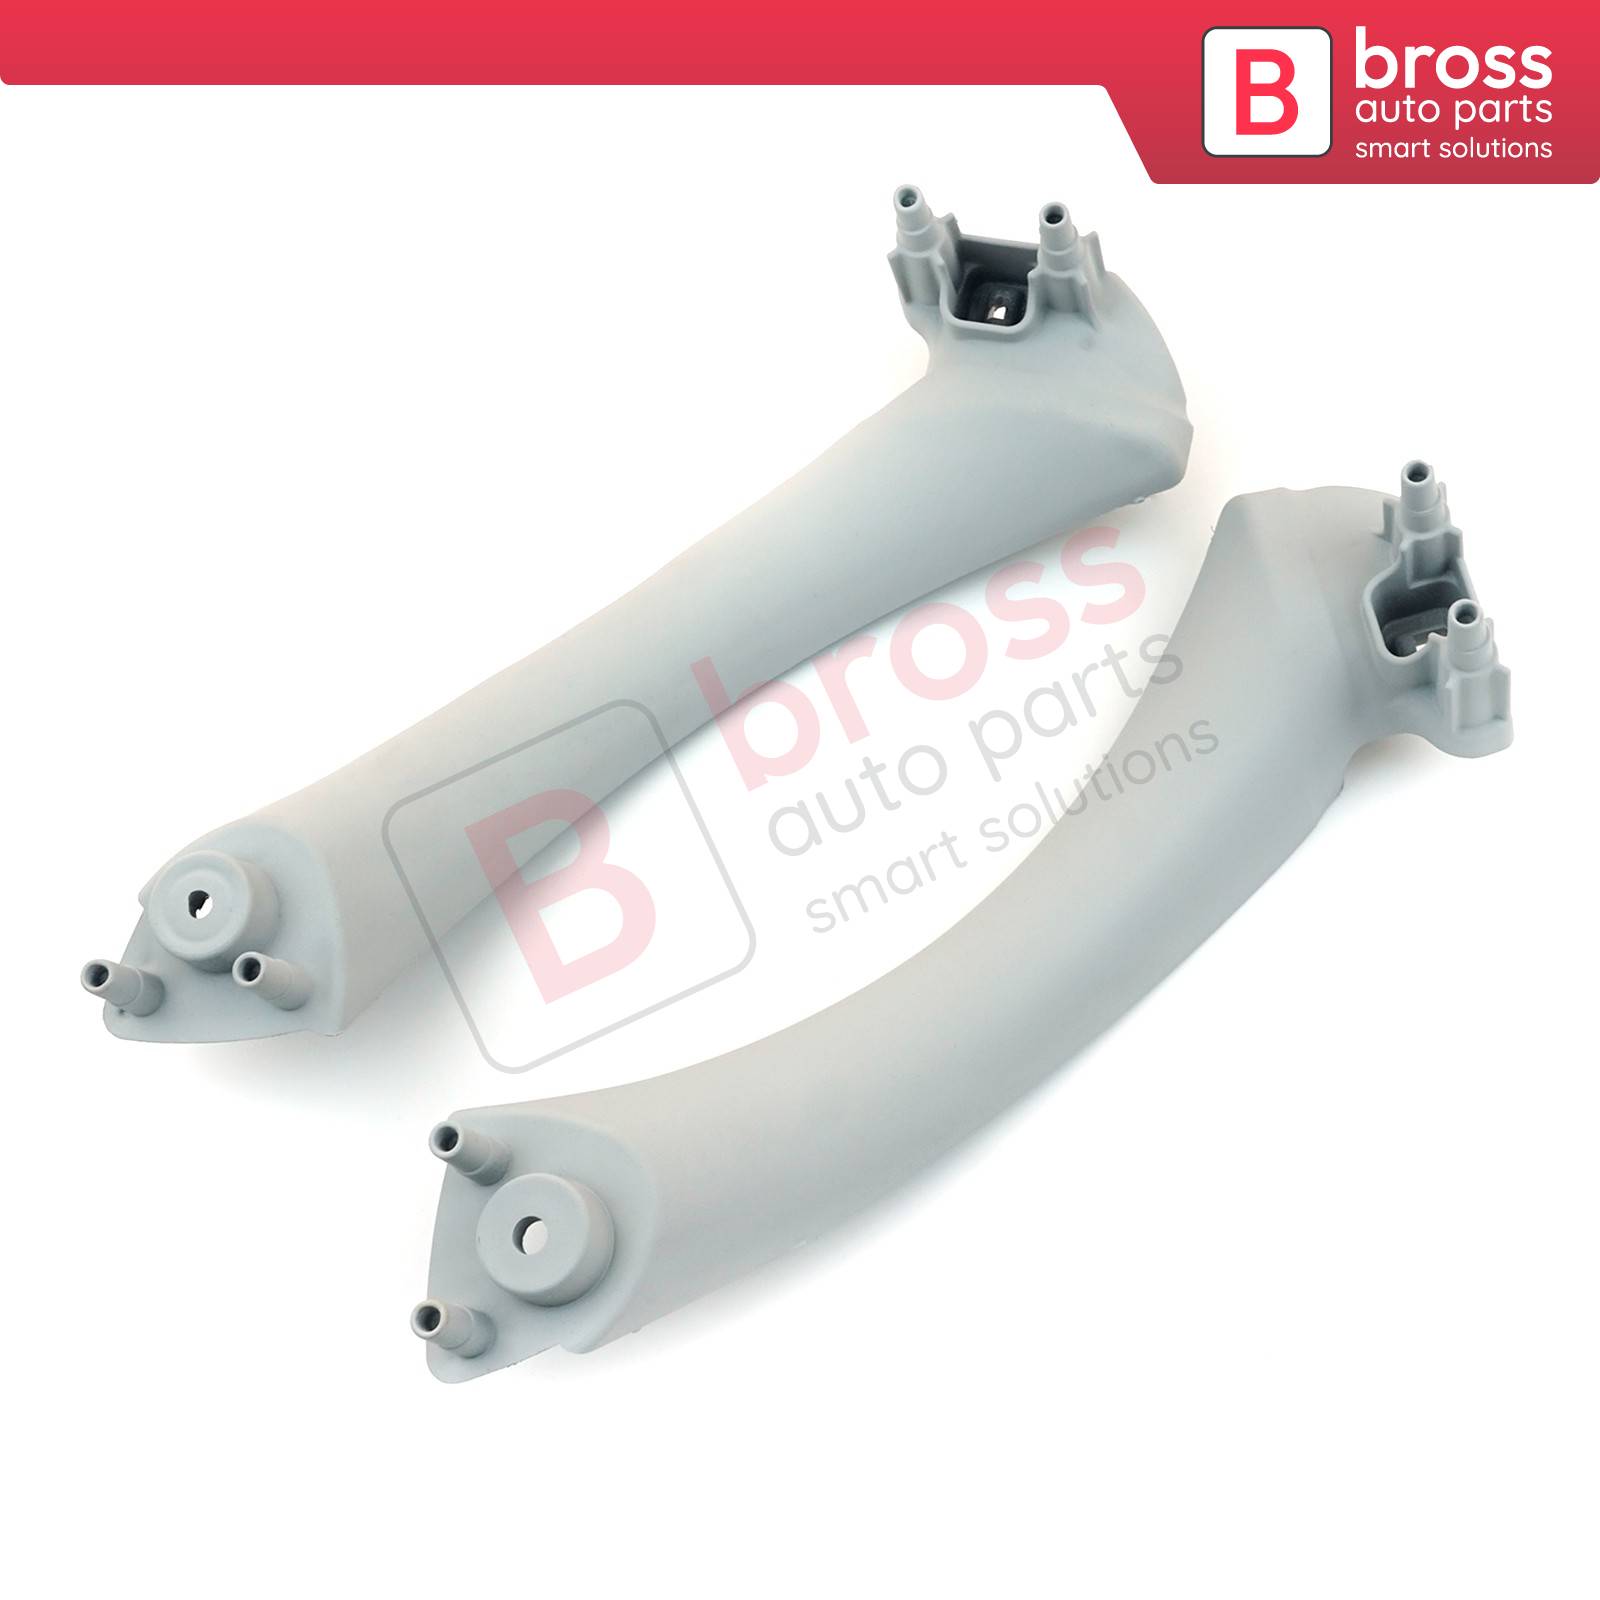 Bross Auto Parts LLC - BDP1053 Inner Door Handle Pull Strap